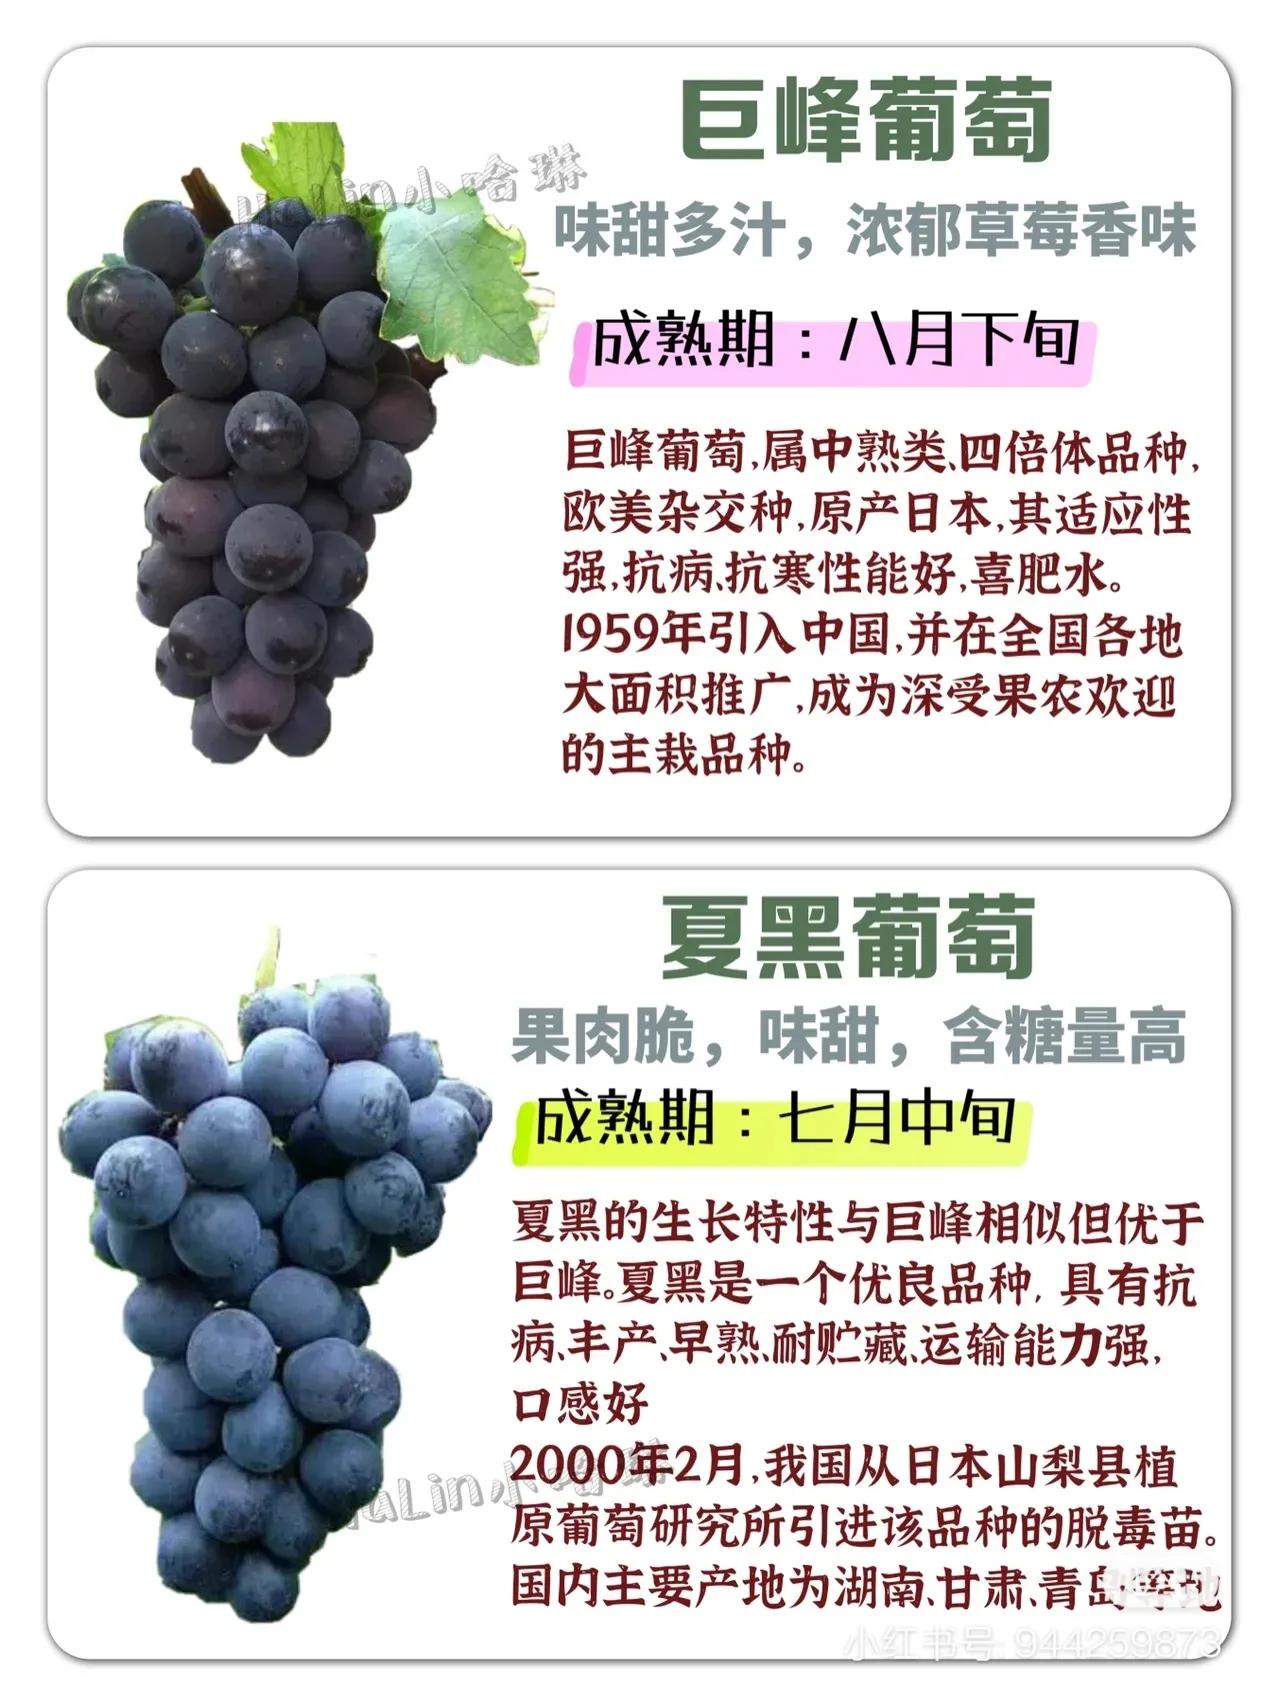 常见葡萄区别和口感